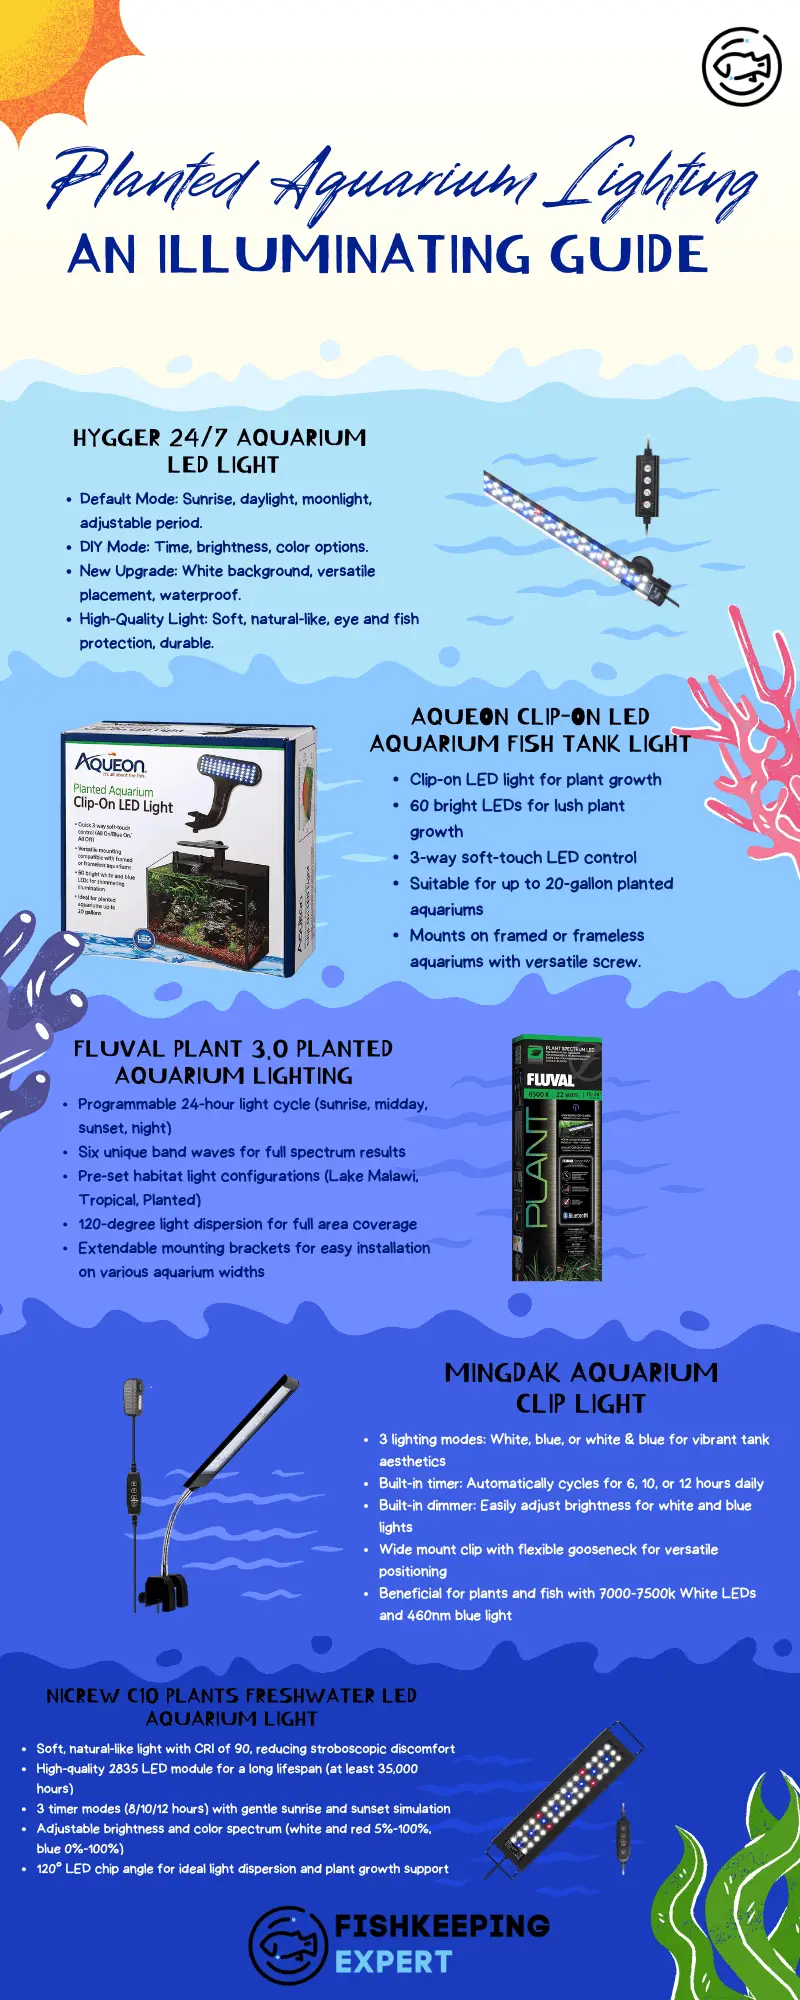 Planted-Aquarium-Lighting